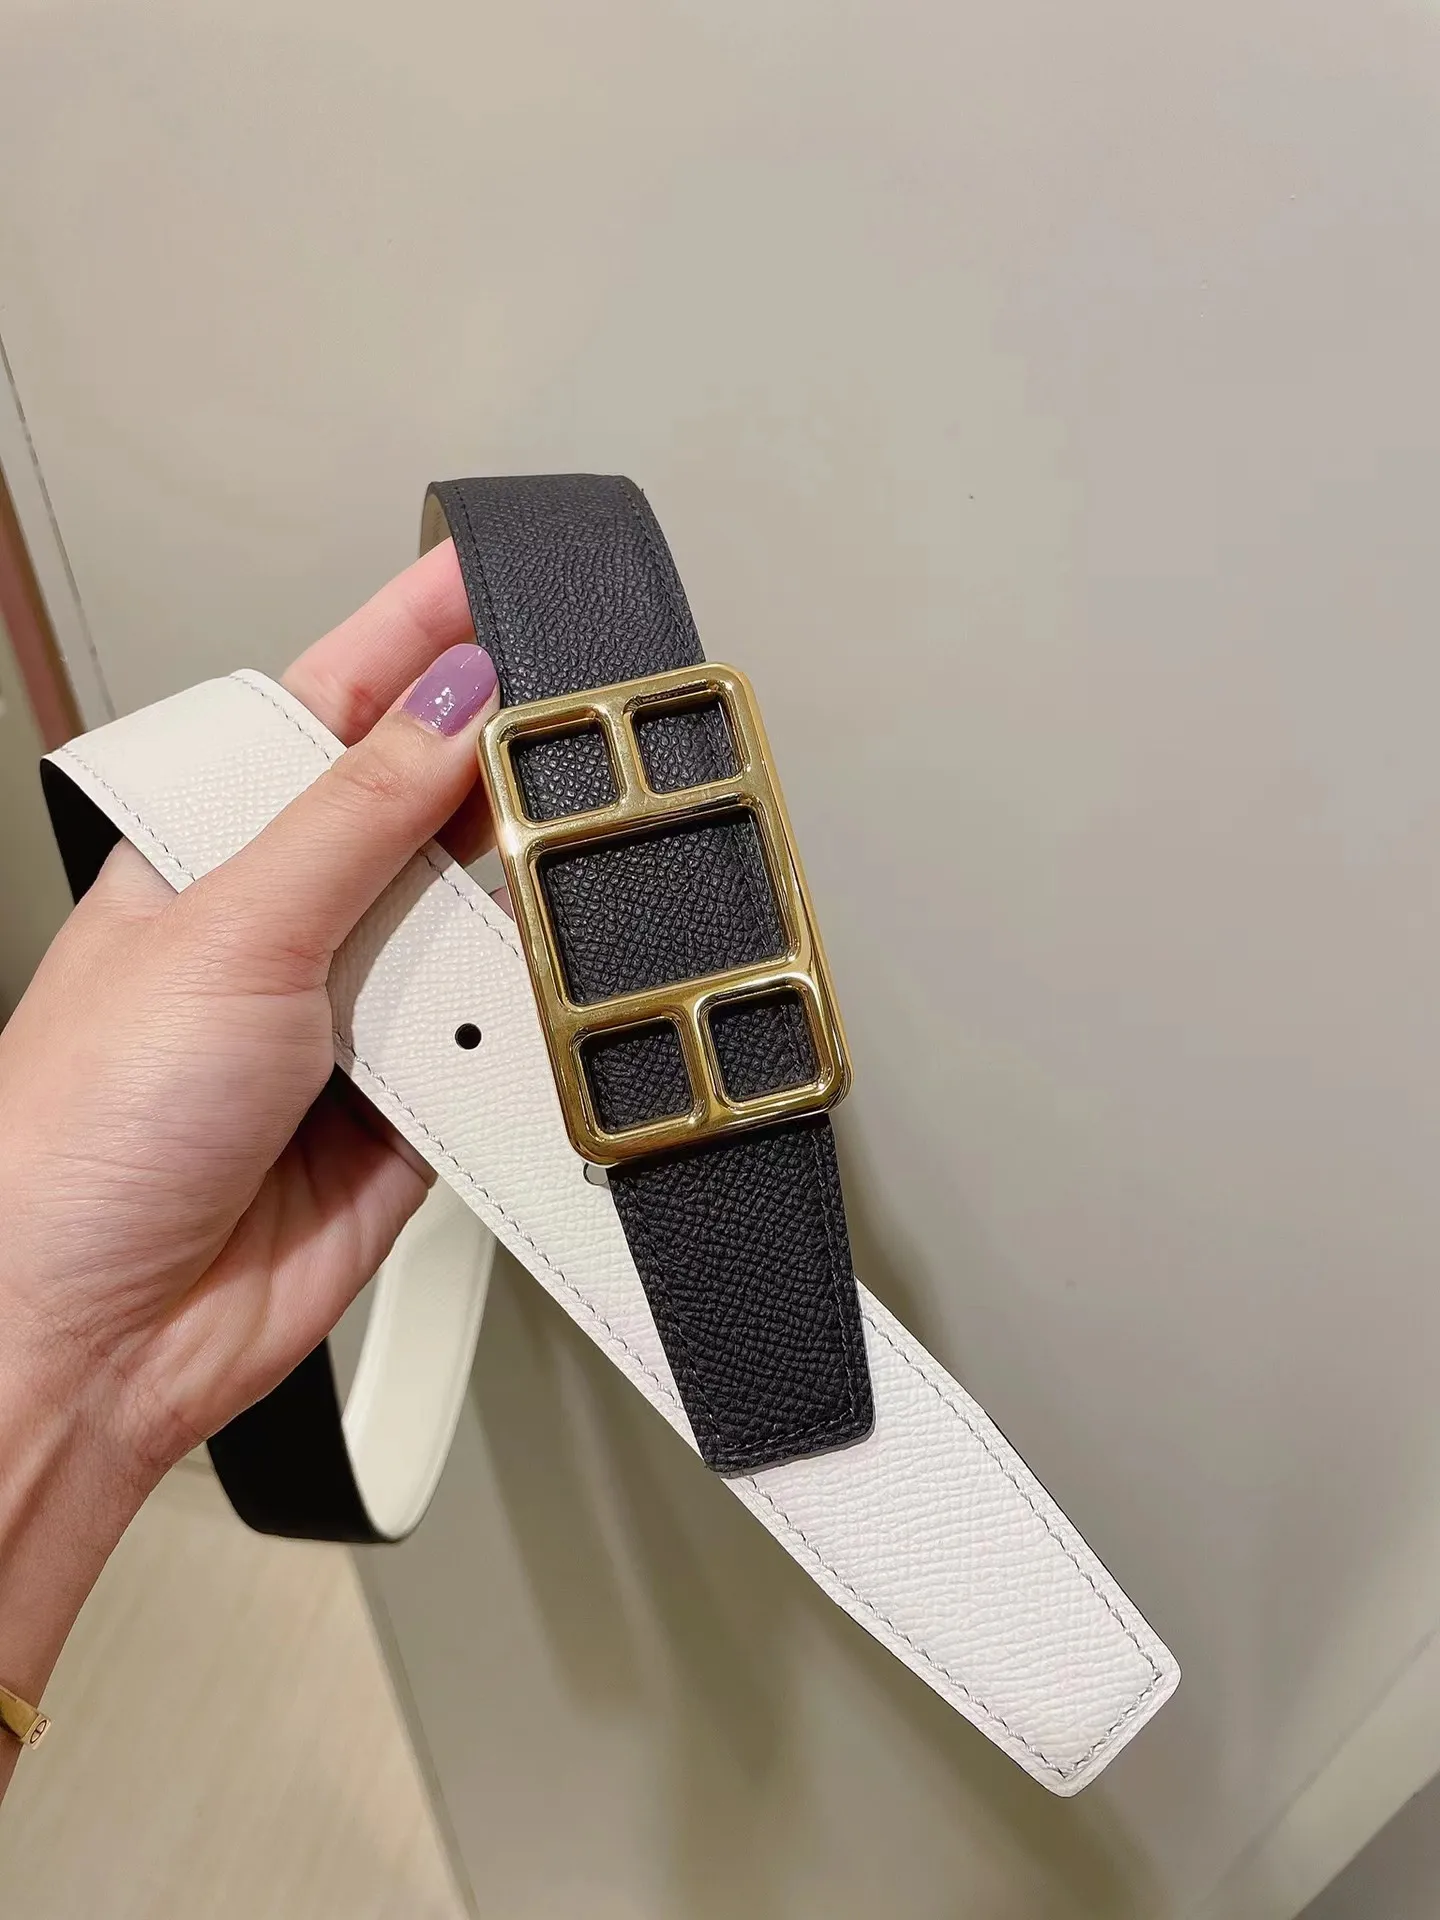 Cinturones para hombres diseñadores marca H cinturón mujer moda cuero cintura negro marrón cuero cinturones para mujeres clásico Casual cinturón